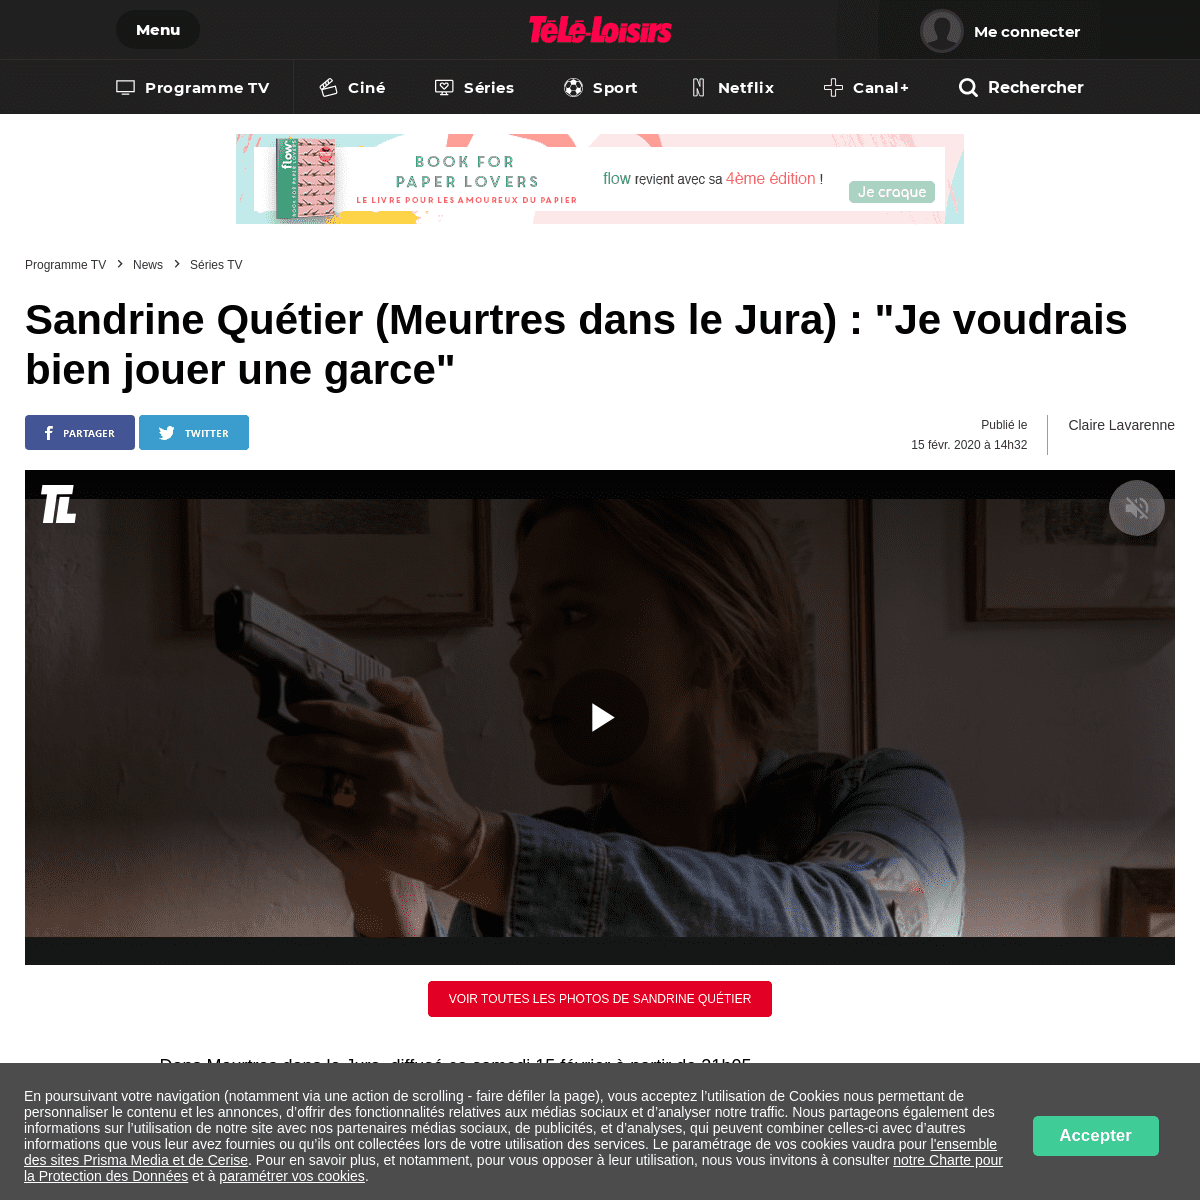 A complete backup of www.programme-tv.net/news/series-tv/249256-sandrine-quetier-meurtres-dans-le-jura-je-voudrais-bien-jouer-un